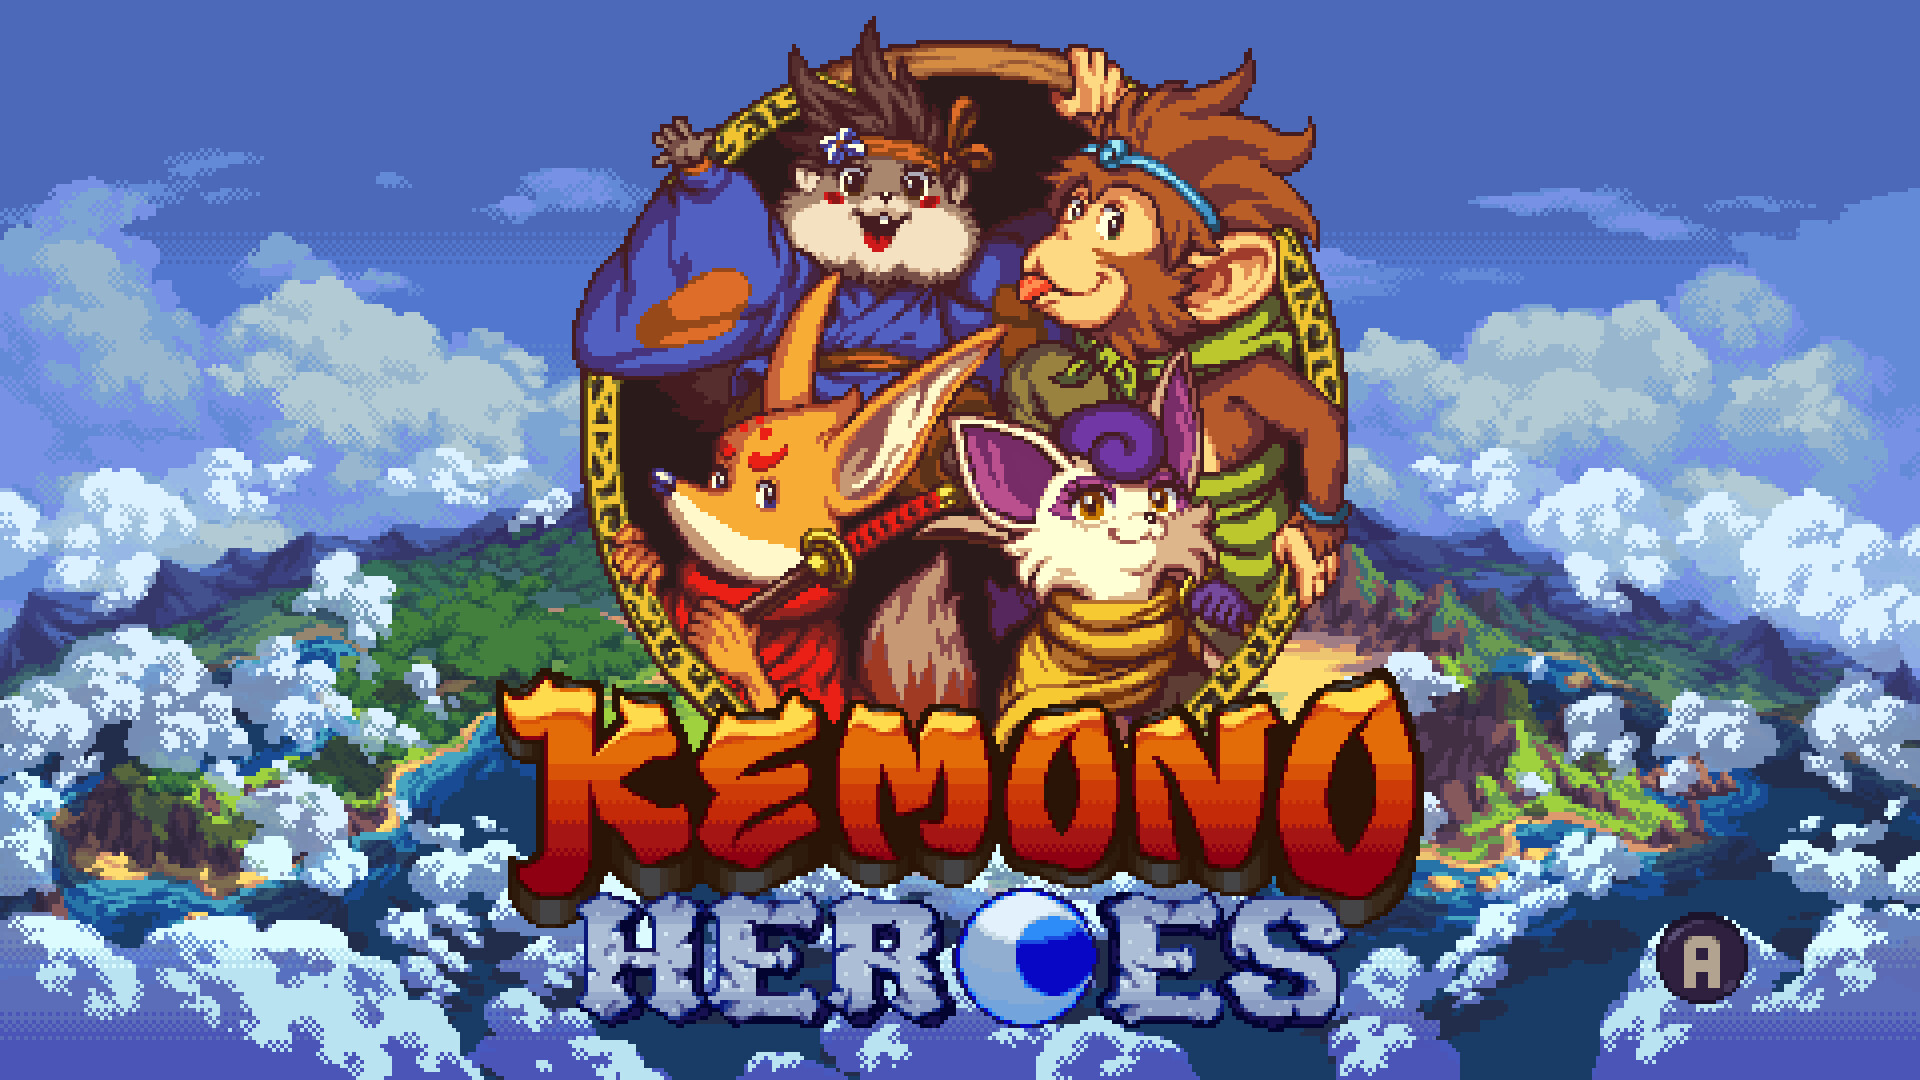 #Kemono Heroes erscheint nach über drei Jahren auch für alle weiteren Plattformen